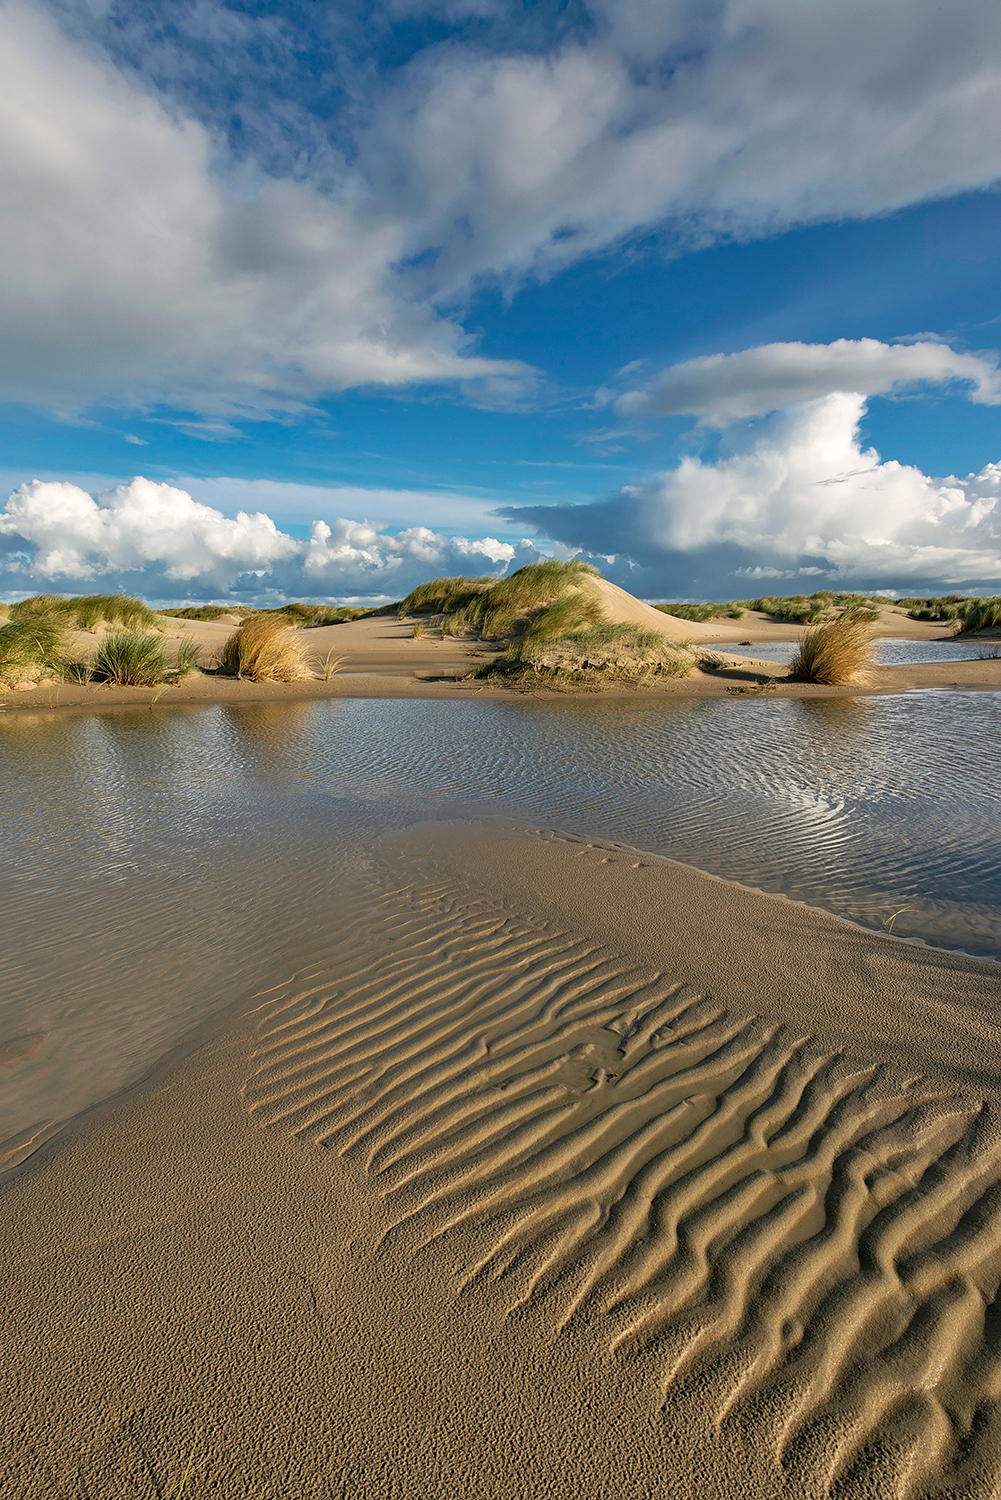 Water in natte vallei tussen de zeeduinen op de strandvlakte van De Hors op de zuidpunt van Waddeneiland Texel.